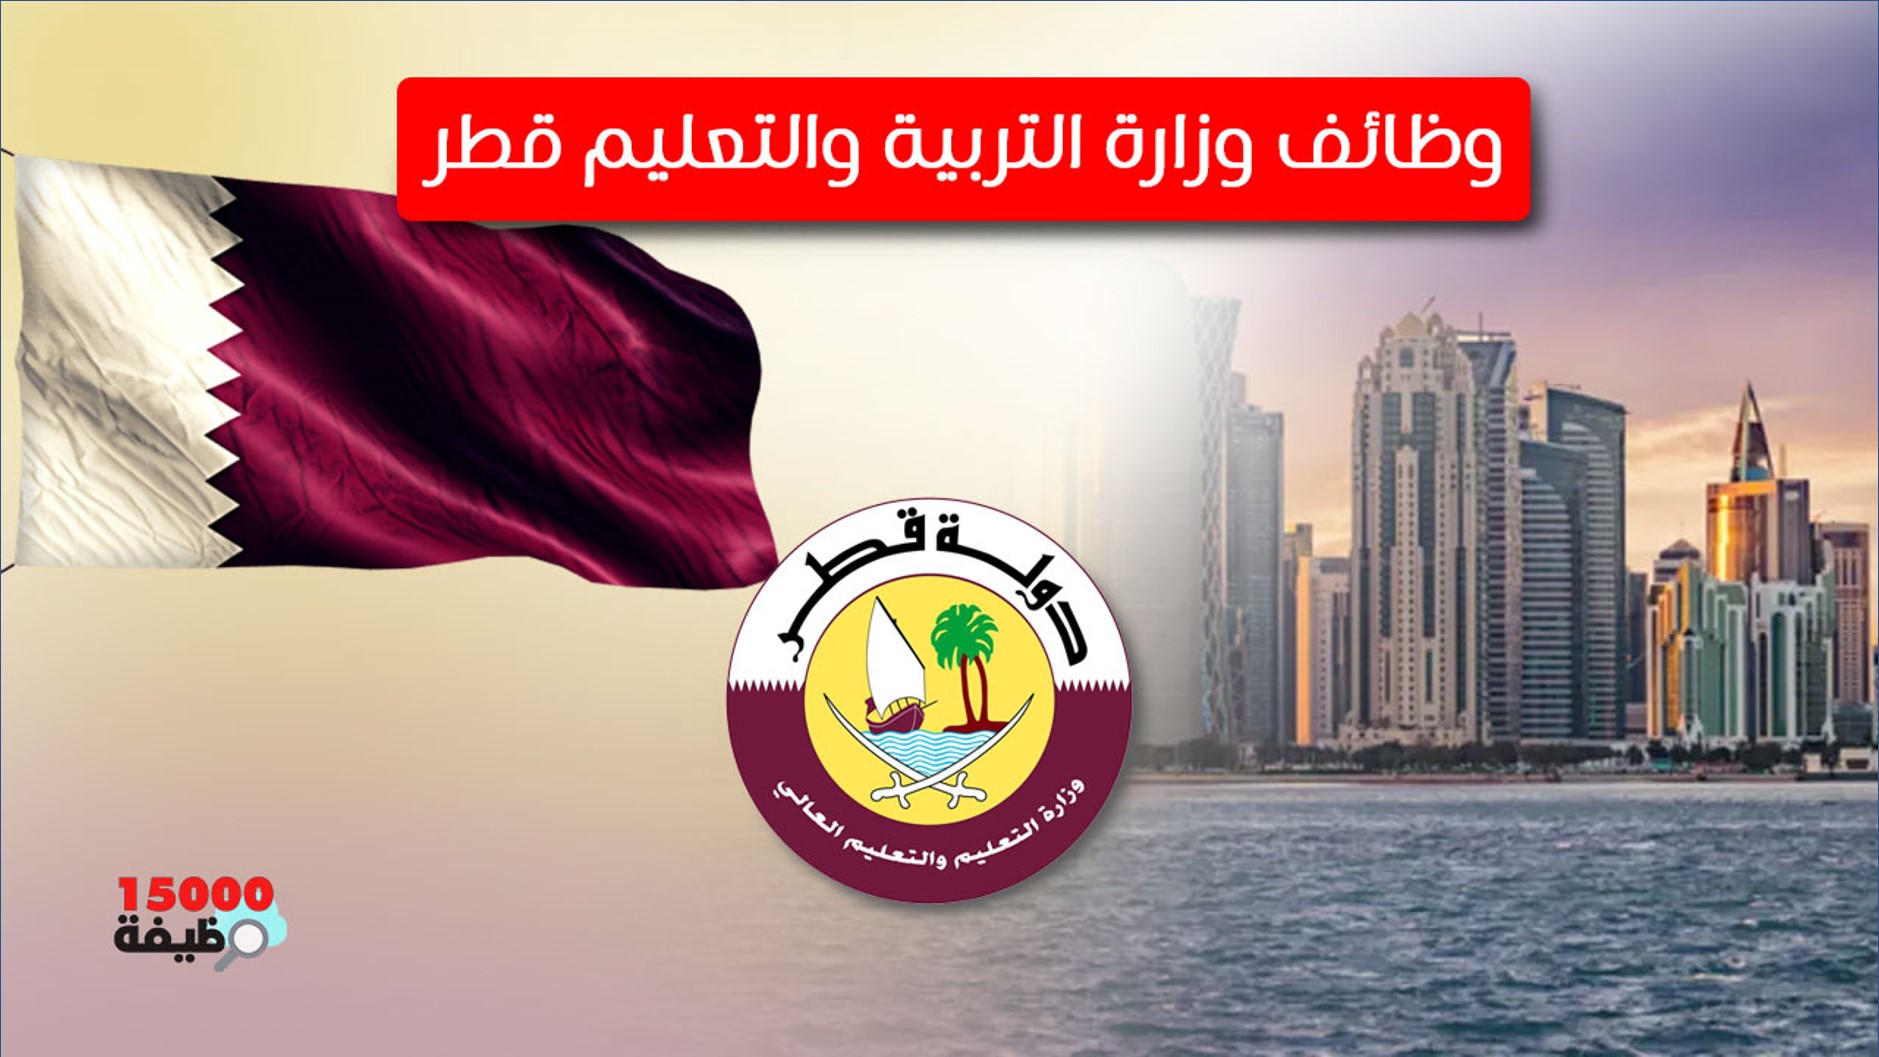 وزارة التربية والتعليم بدولة قطر - 15000 وظيفة